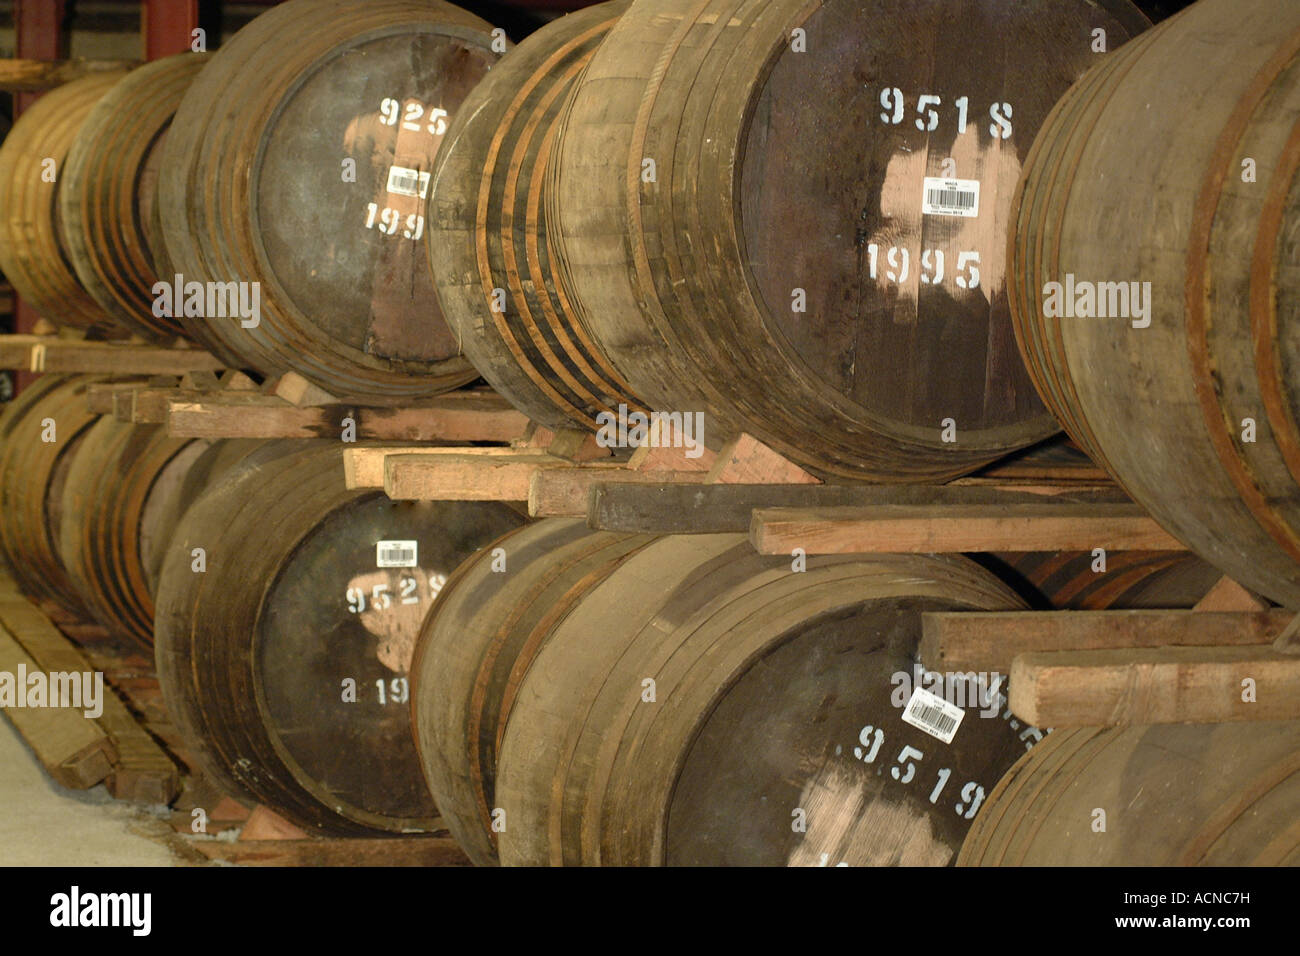 Barils de whisky en cave Banque D'Images